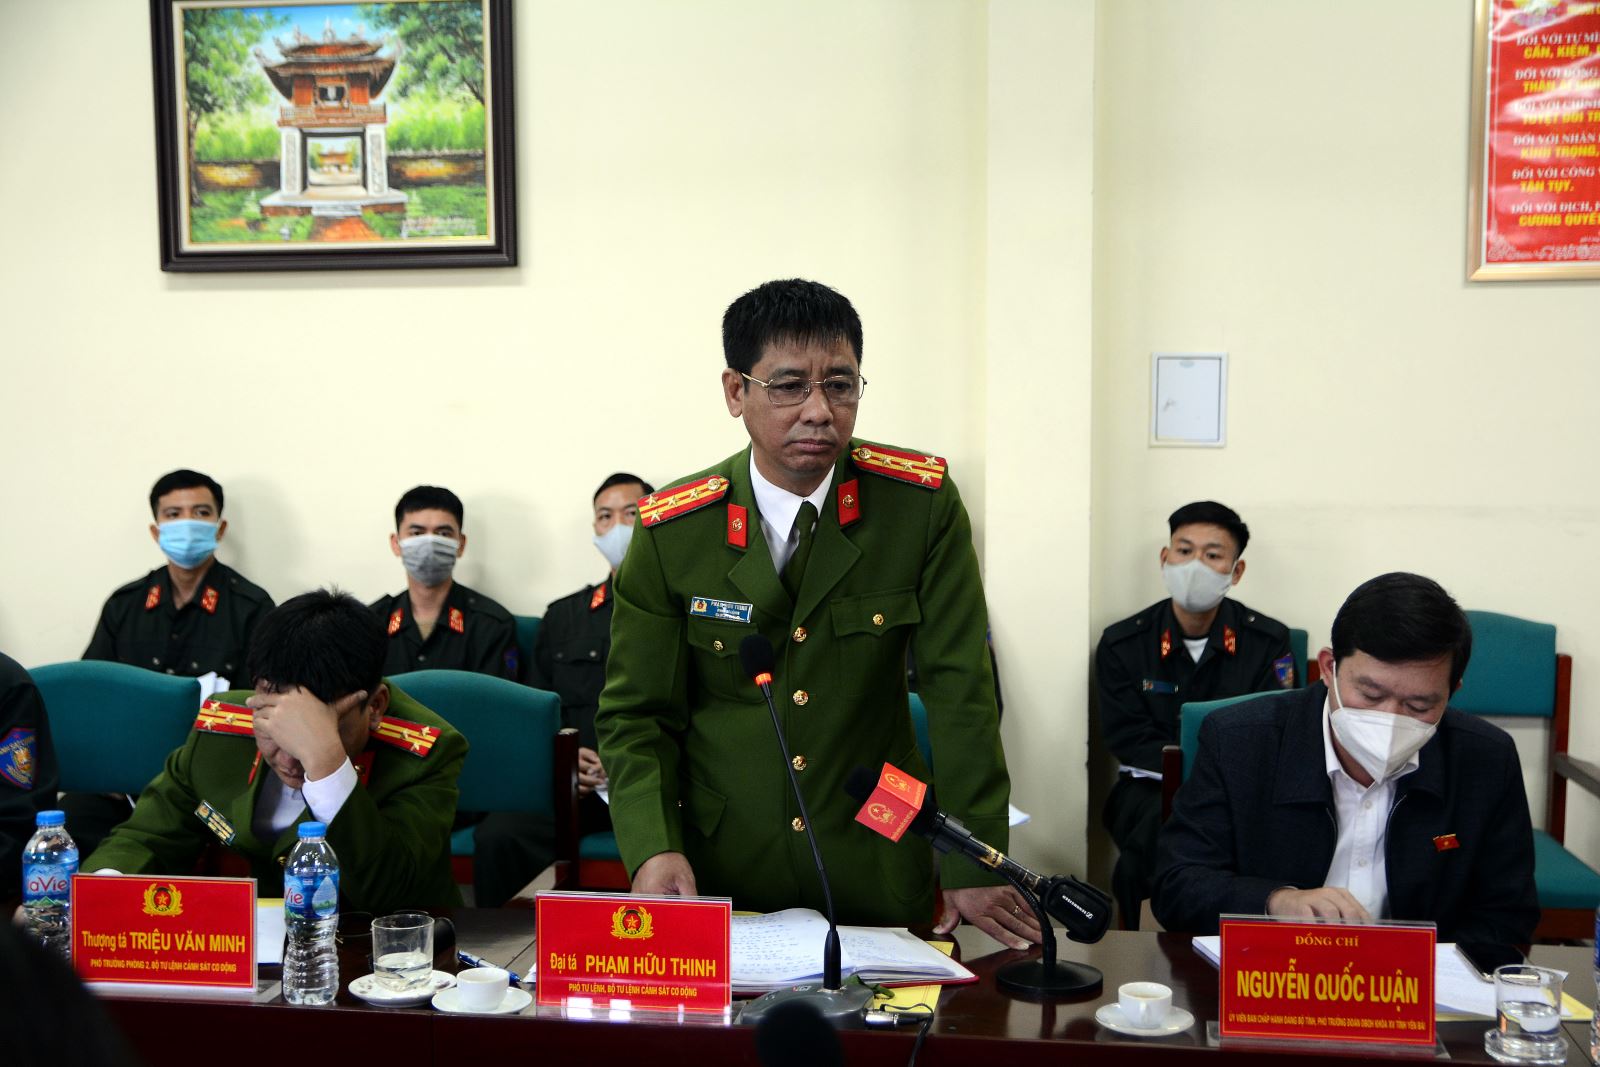 Phó Tư lệnh CSCĐ, Bộ Tư lệnh CSCĐ Phạm Hữu Thinh tham gia ý kiến